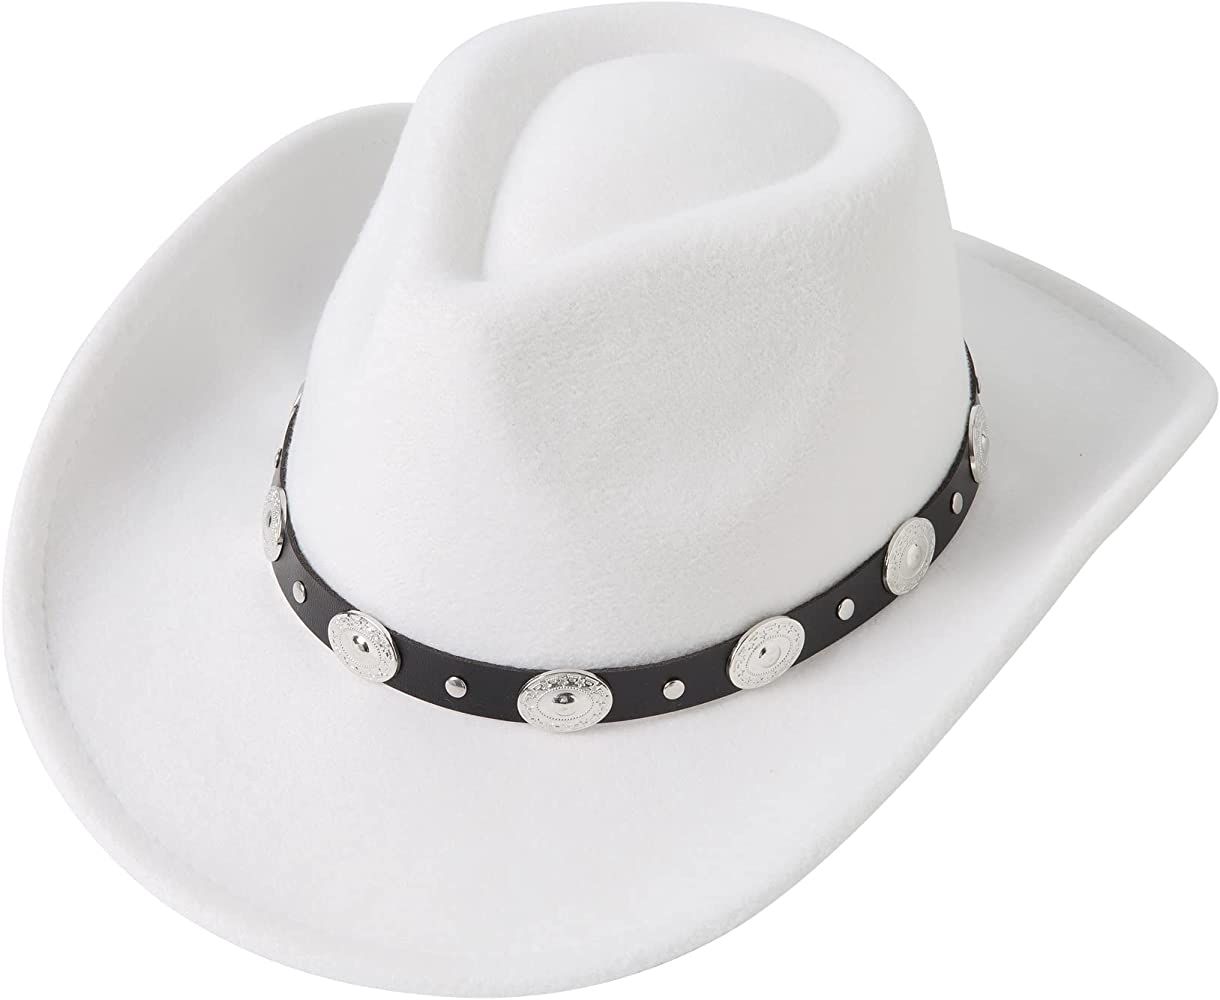 Lanzom Women Men Felt Wide Brim Western Cowboy Hats Belt Buckle Panama Hat | Amazon (US)